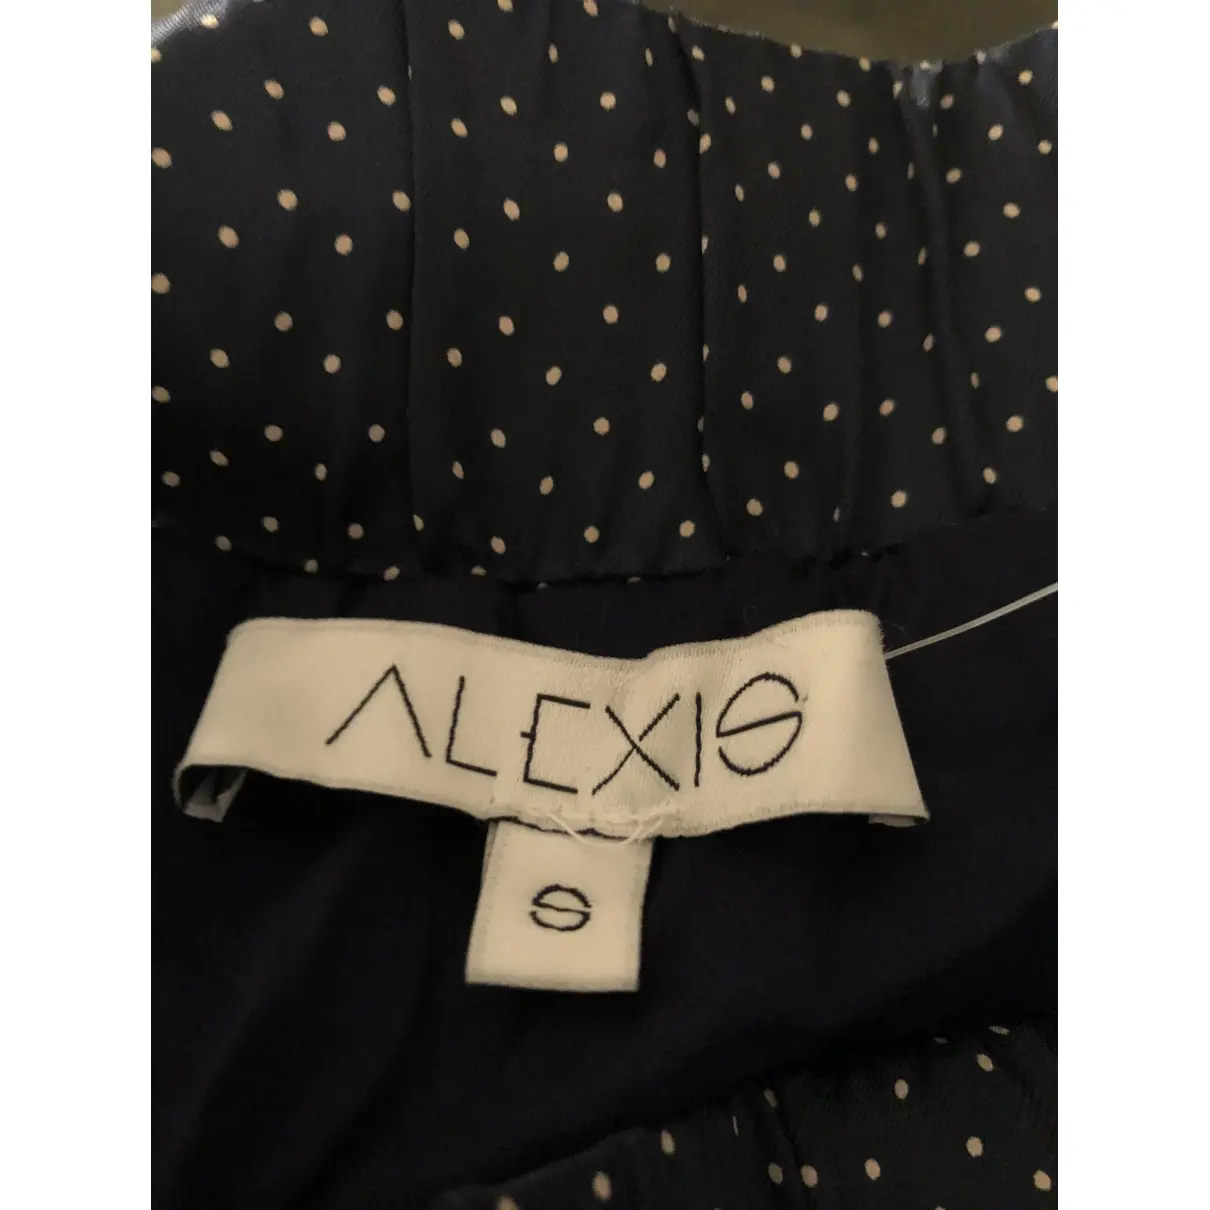 Buy Alexis Mini skirt online